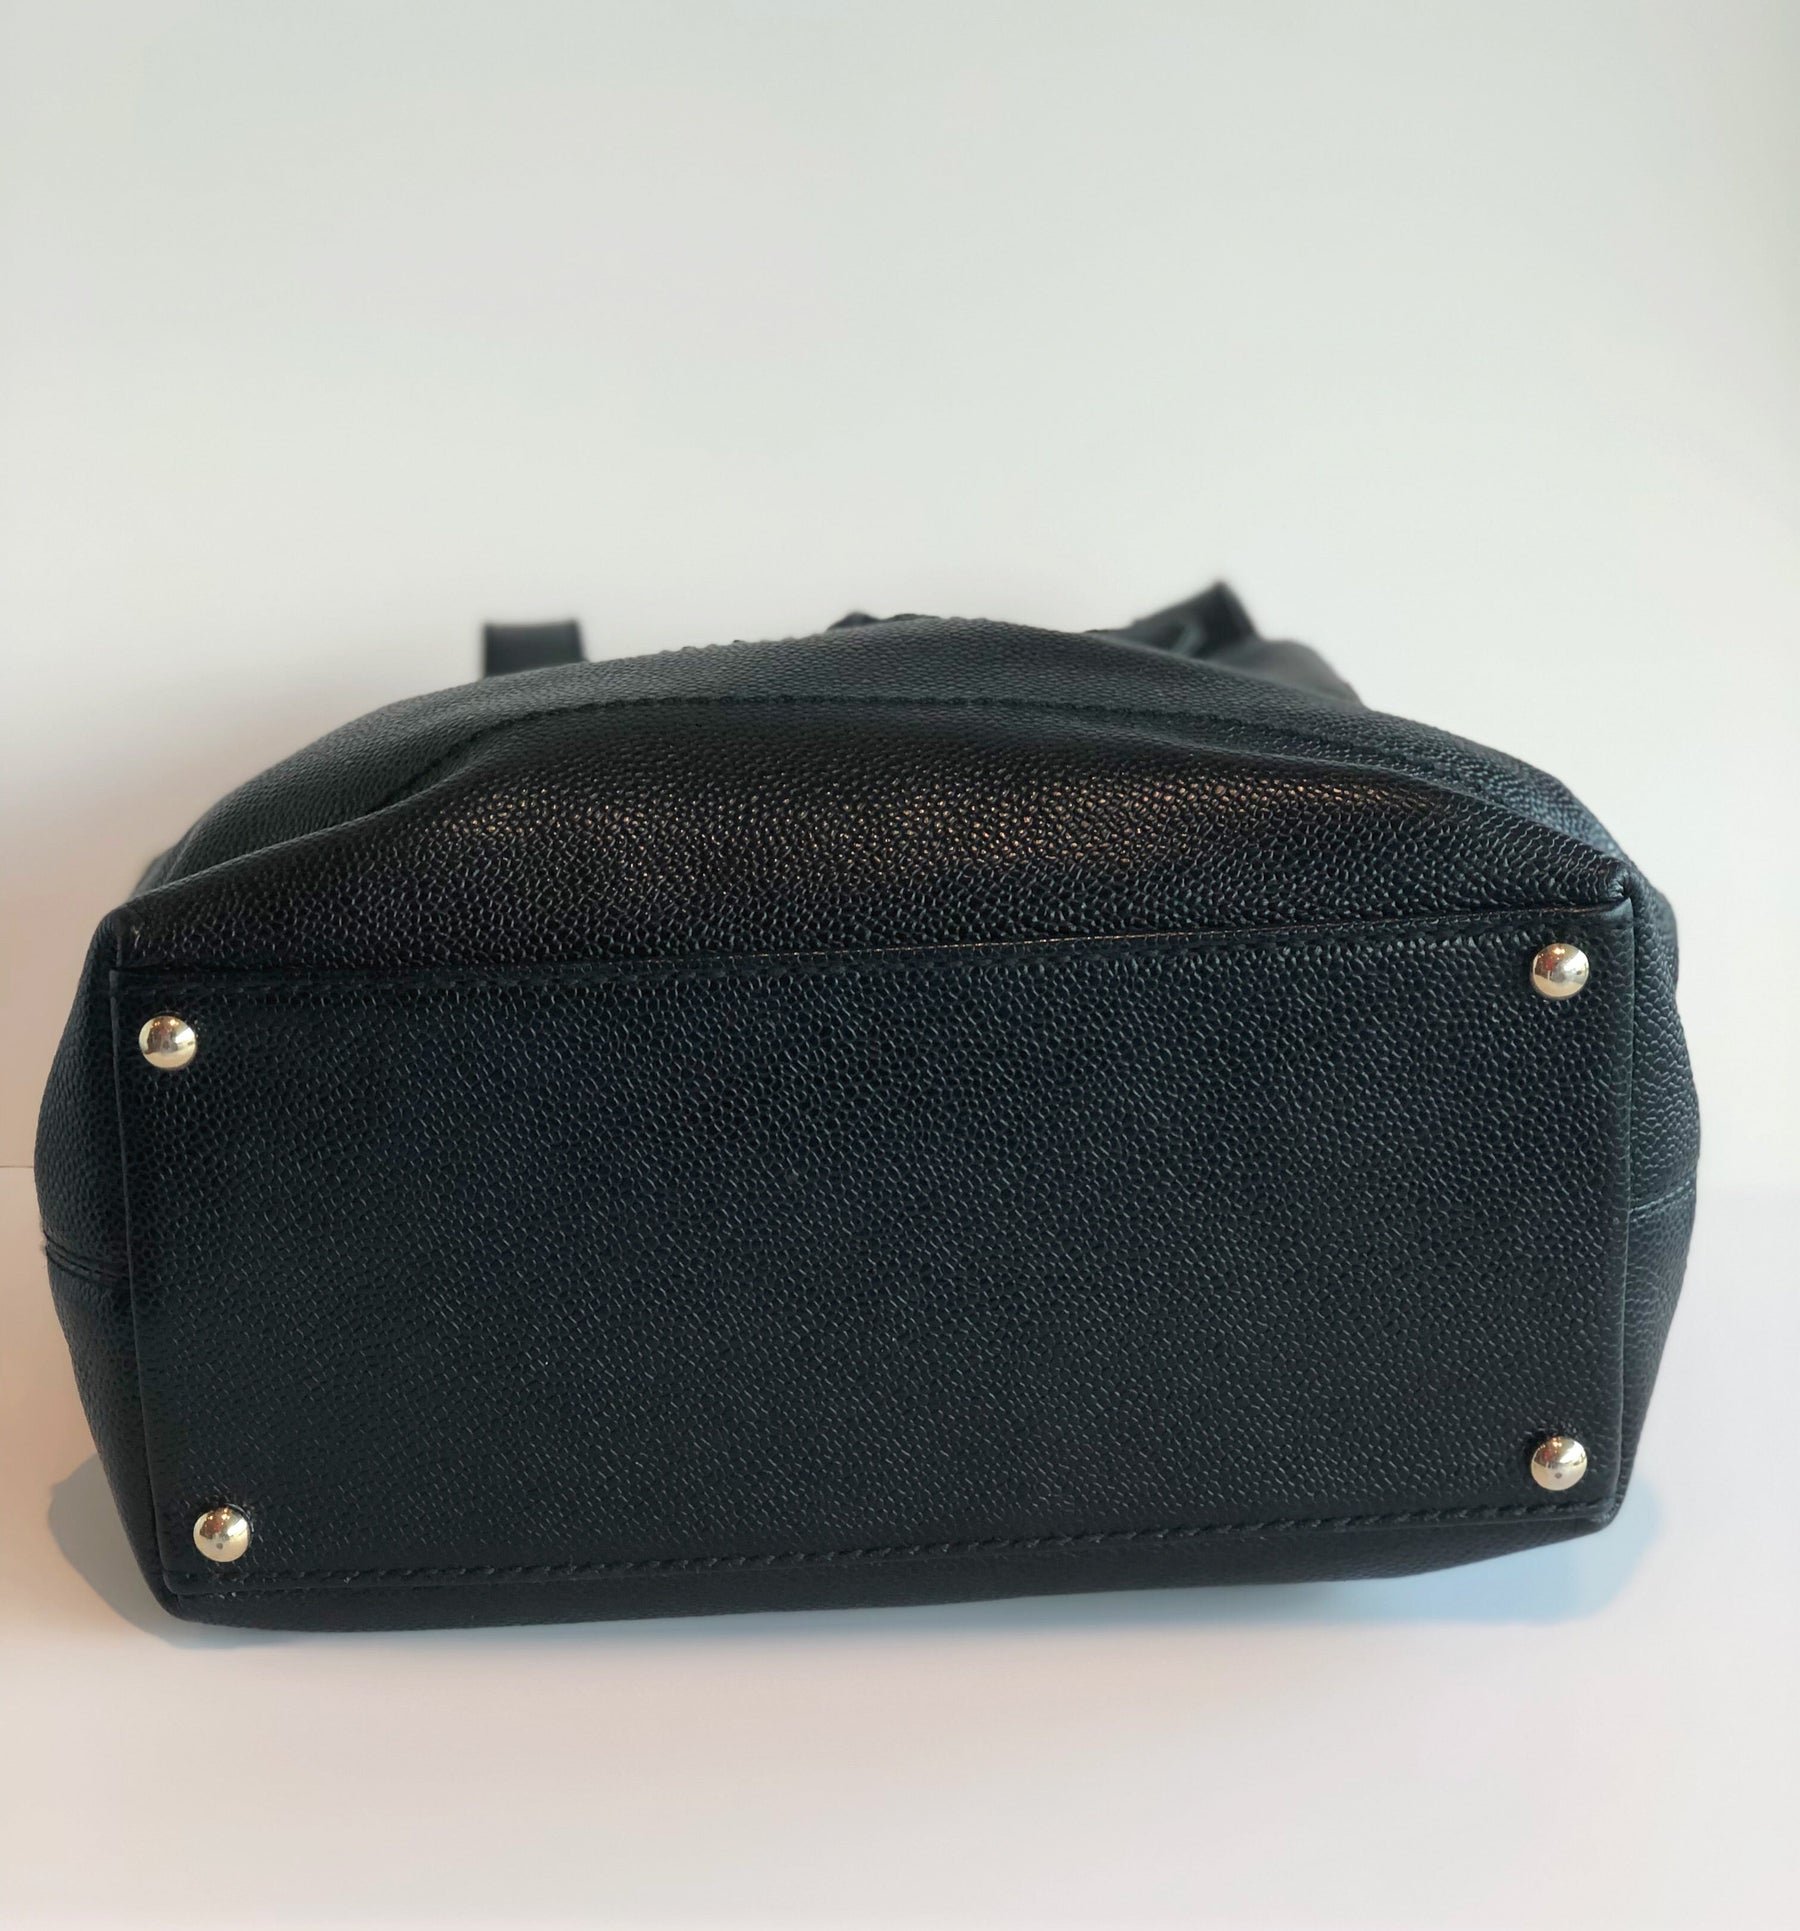 Chanel Caviar Leather Bucket Bag Black Bottom of Bag